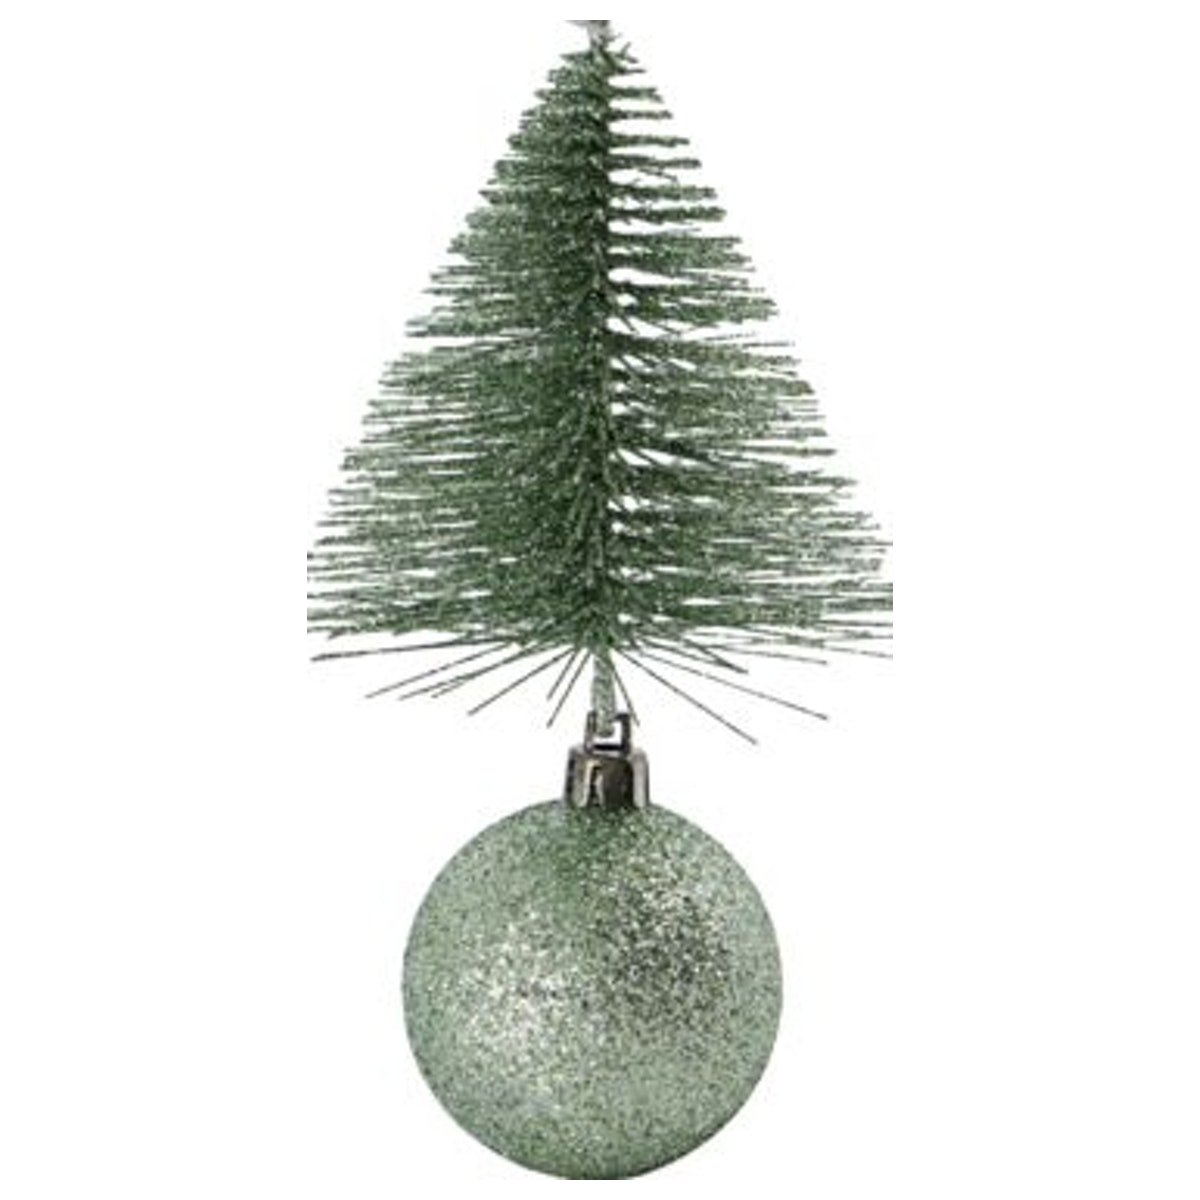 Julepynt, Tree & bell by House Doctor (H: 15 cm. B: 8 cm. L: 8 cm., Grøn)